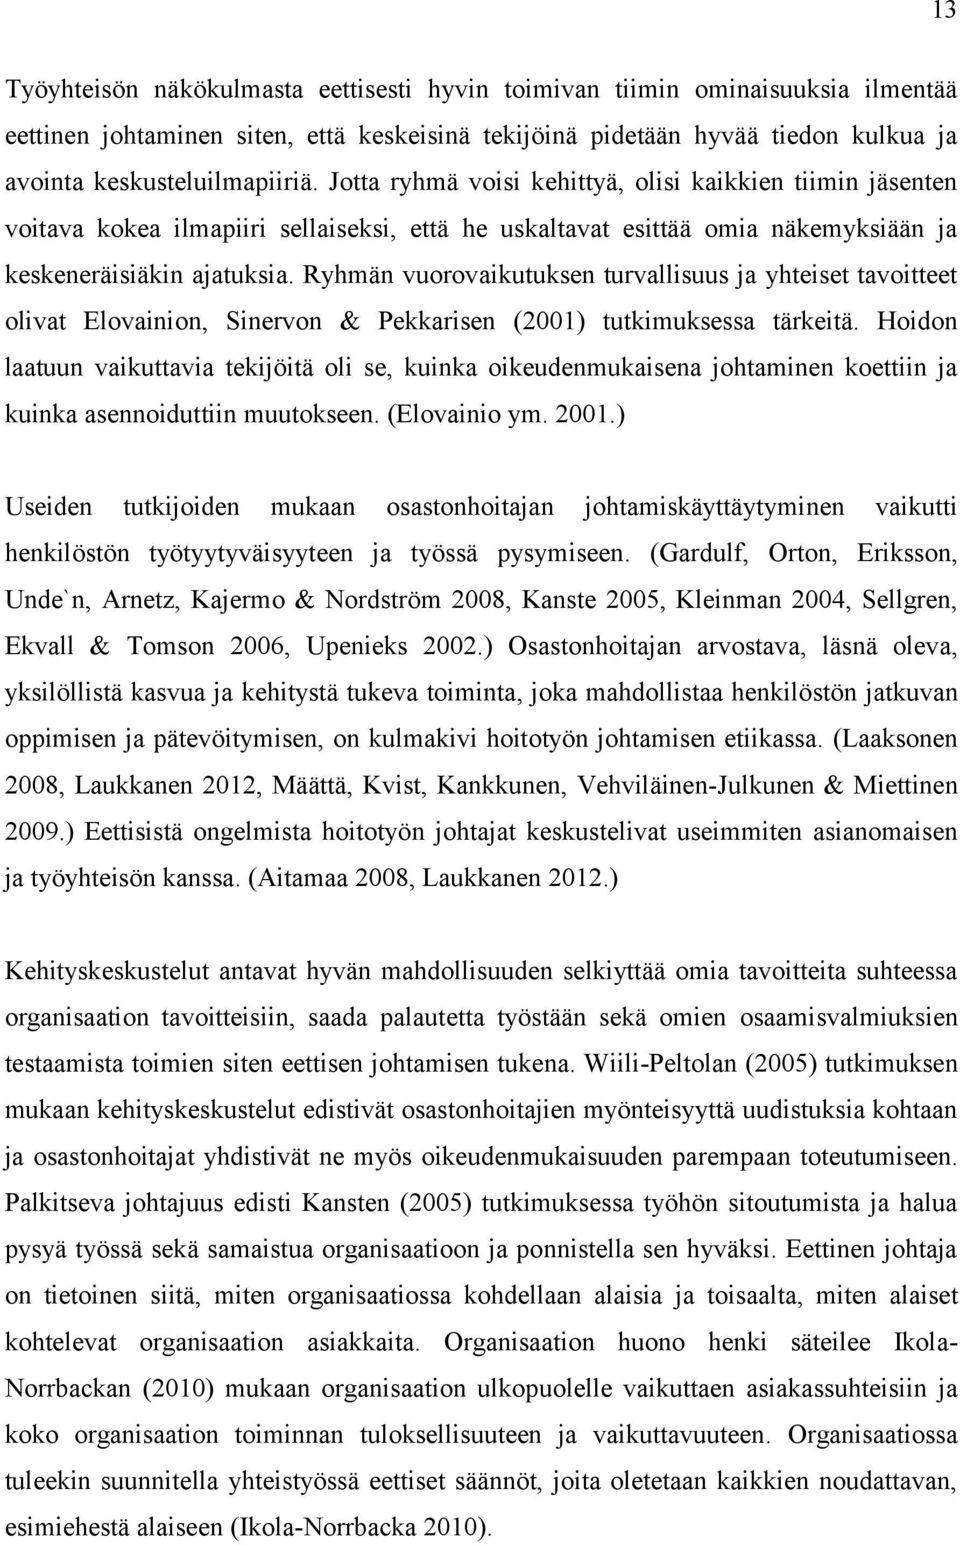 Ryhmän vuorovaikutuksen turvallisuus ja yhteiset tavoitteet olivat Elovainion, Sinervon & Pekkarisen (2001) tutkimuksessa tärkeitä.